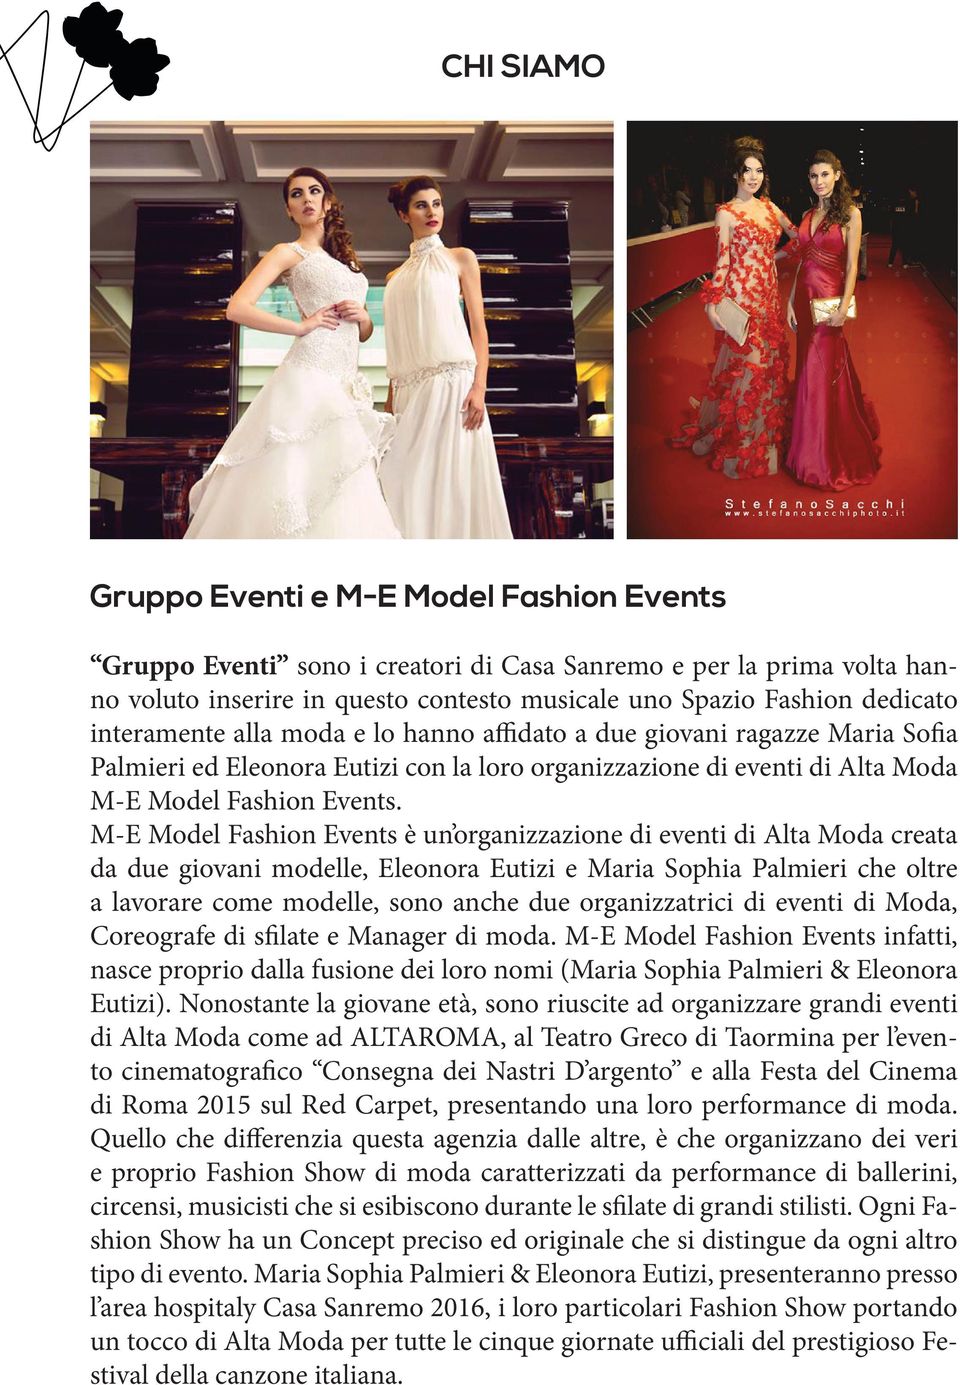 M-E Model Fashion Events è un organizzazione di eventi di Alta Moda creata da due giovani modelle, Eleonora Eutizi e Maria Sophia Palmieri che oltre a lavorare come modelle, sono anche due